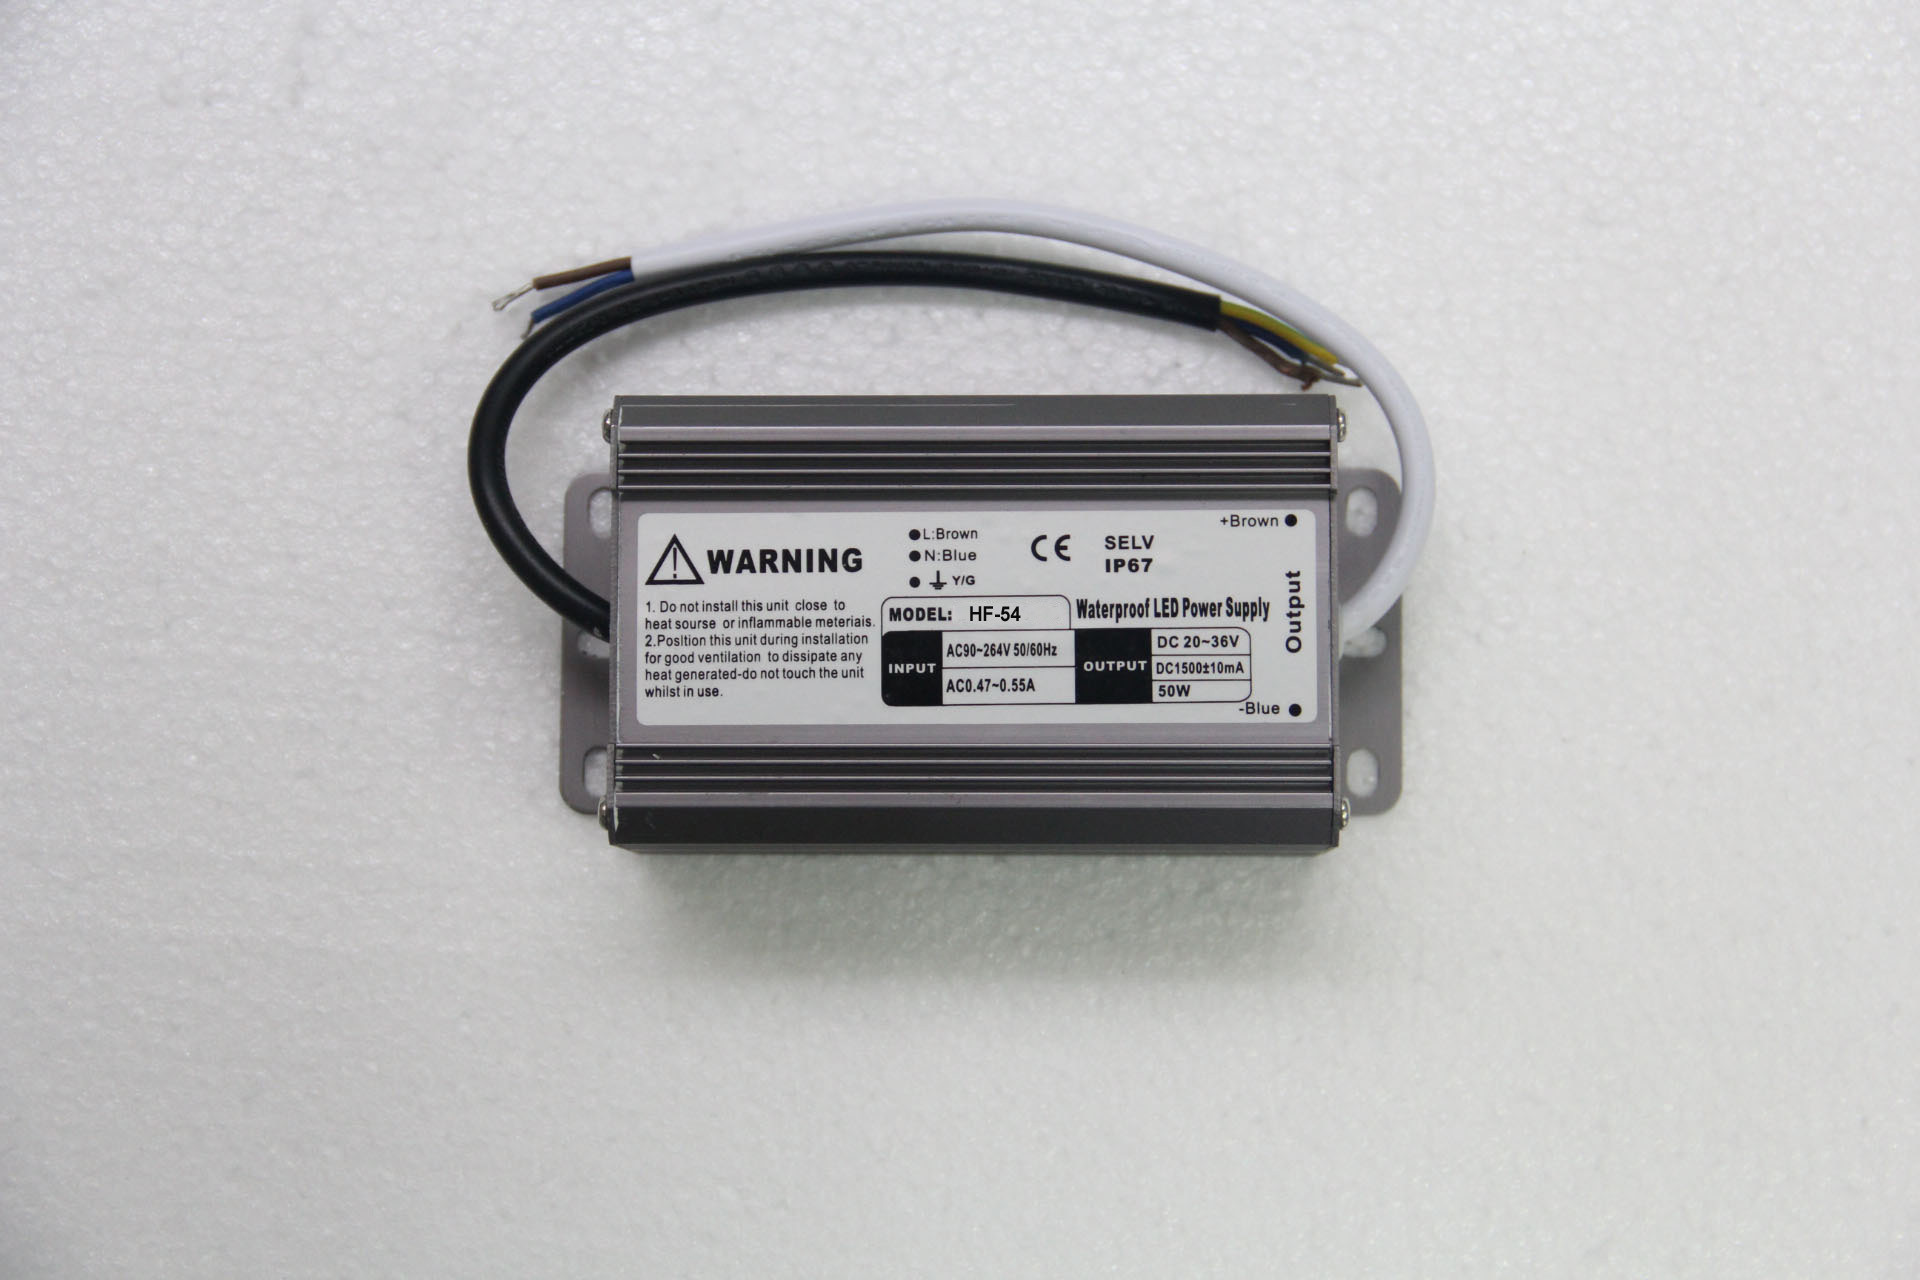 EMC 250V AC 54 Watt Sabit Akımlı LED Güç Kaynağı 1500mA Kapalı LED Işıkları için